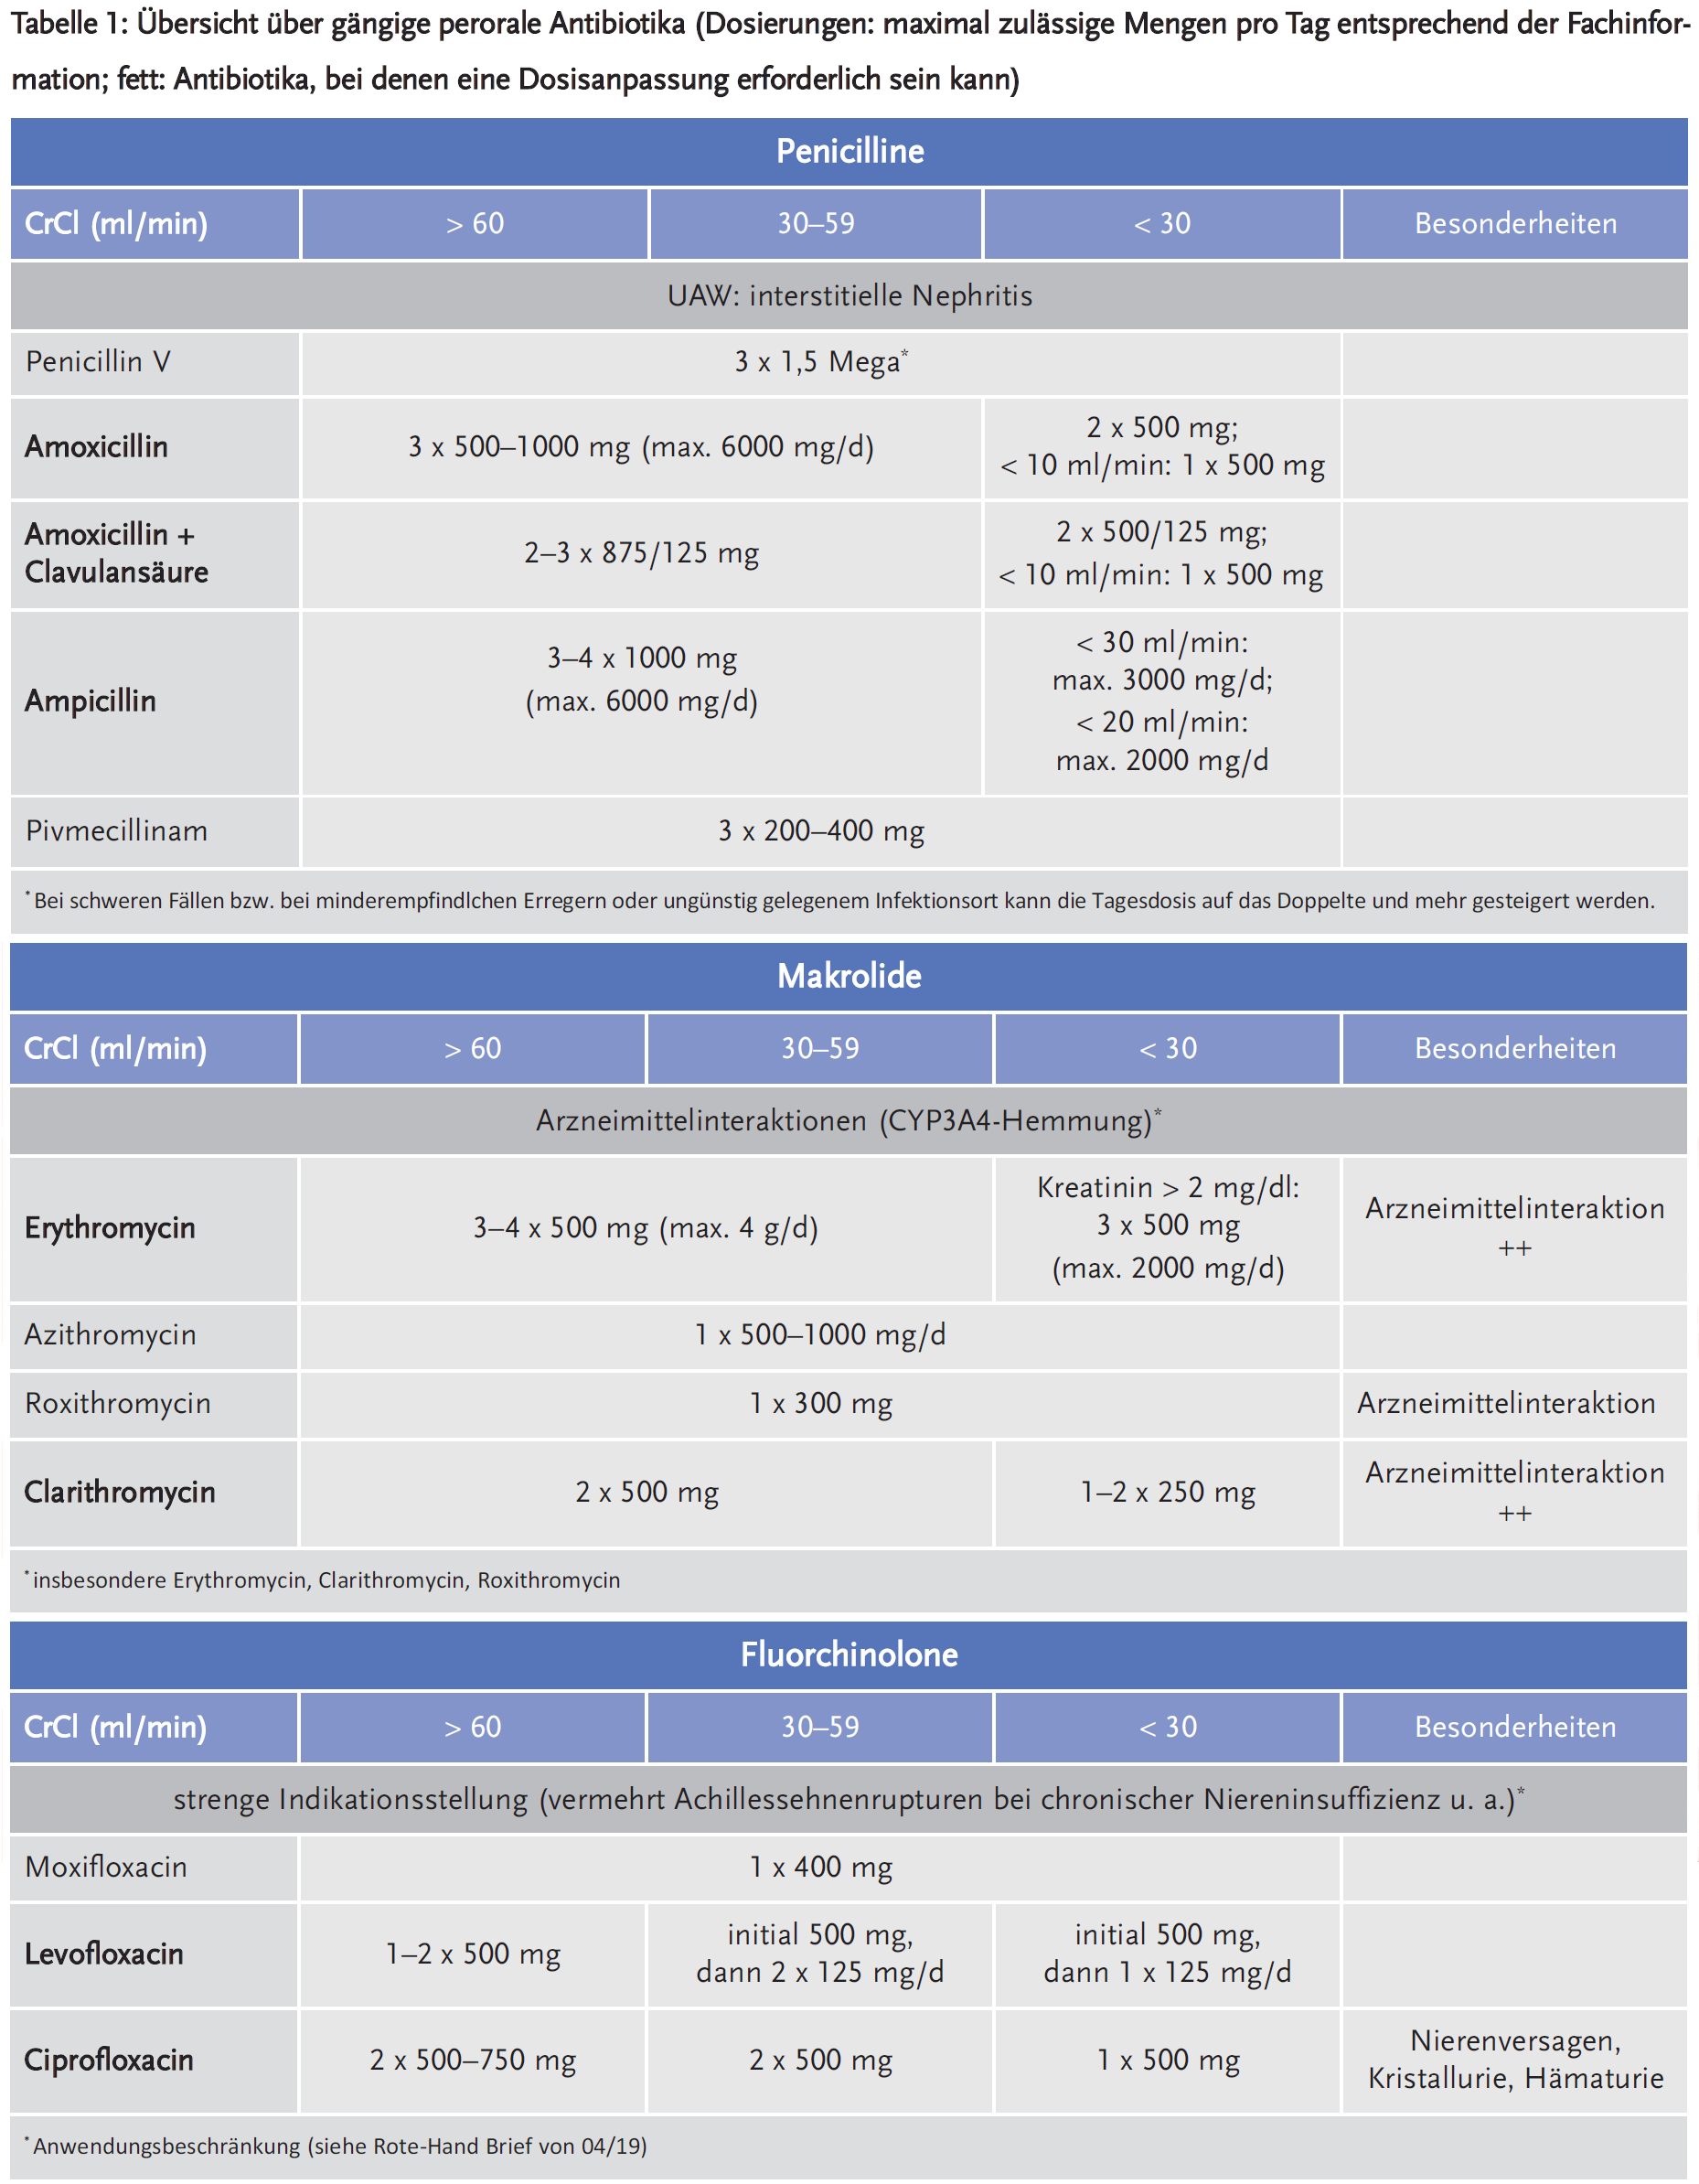 Tabelle 1a: Übersicht über gängige perorale Antibiotika (Dosierungen: maximal zulässige Mengen pro Tag entsprechend der Fachinformation; fett: Antibiotika, bei denen eine Dosisanpassung erforderlich sein kann)